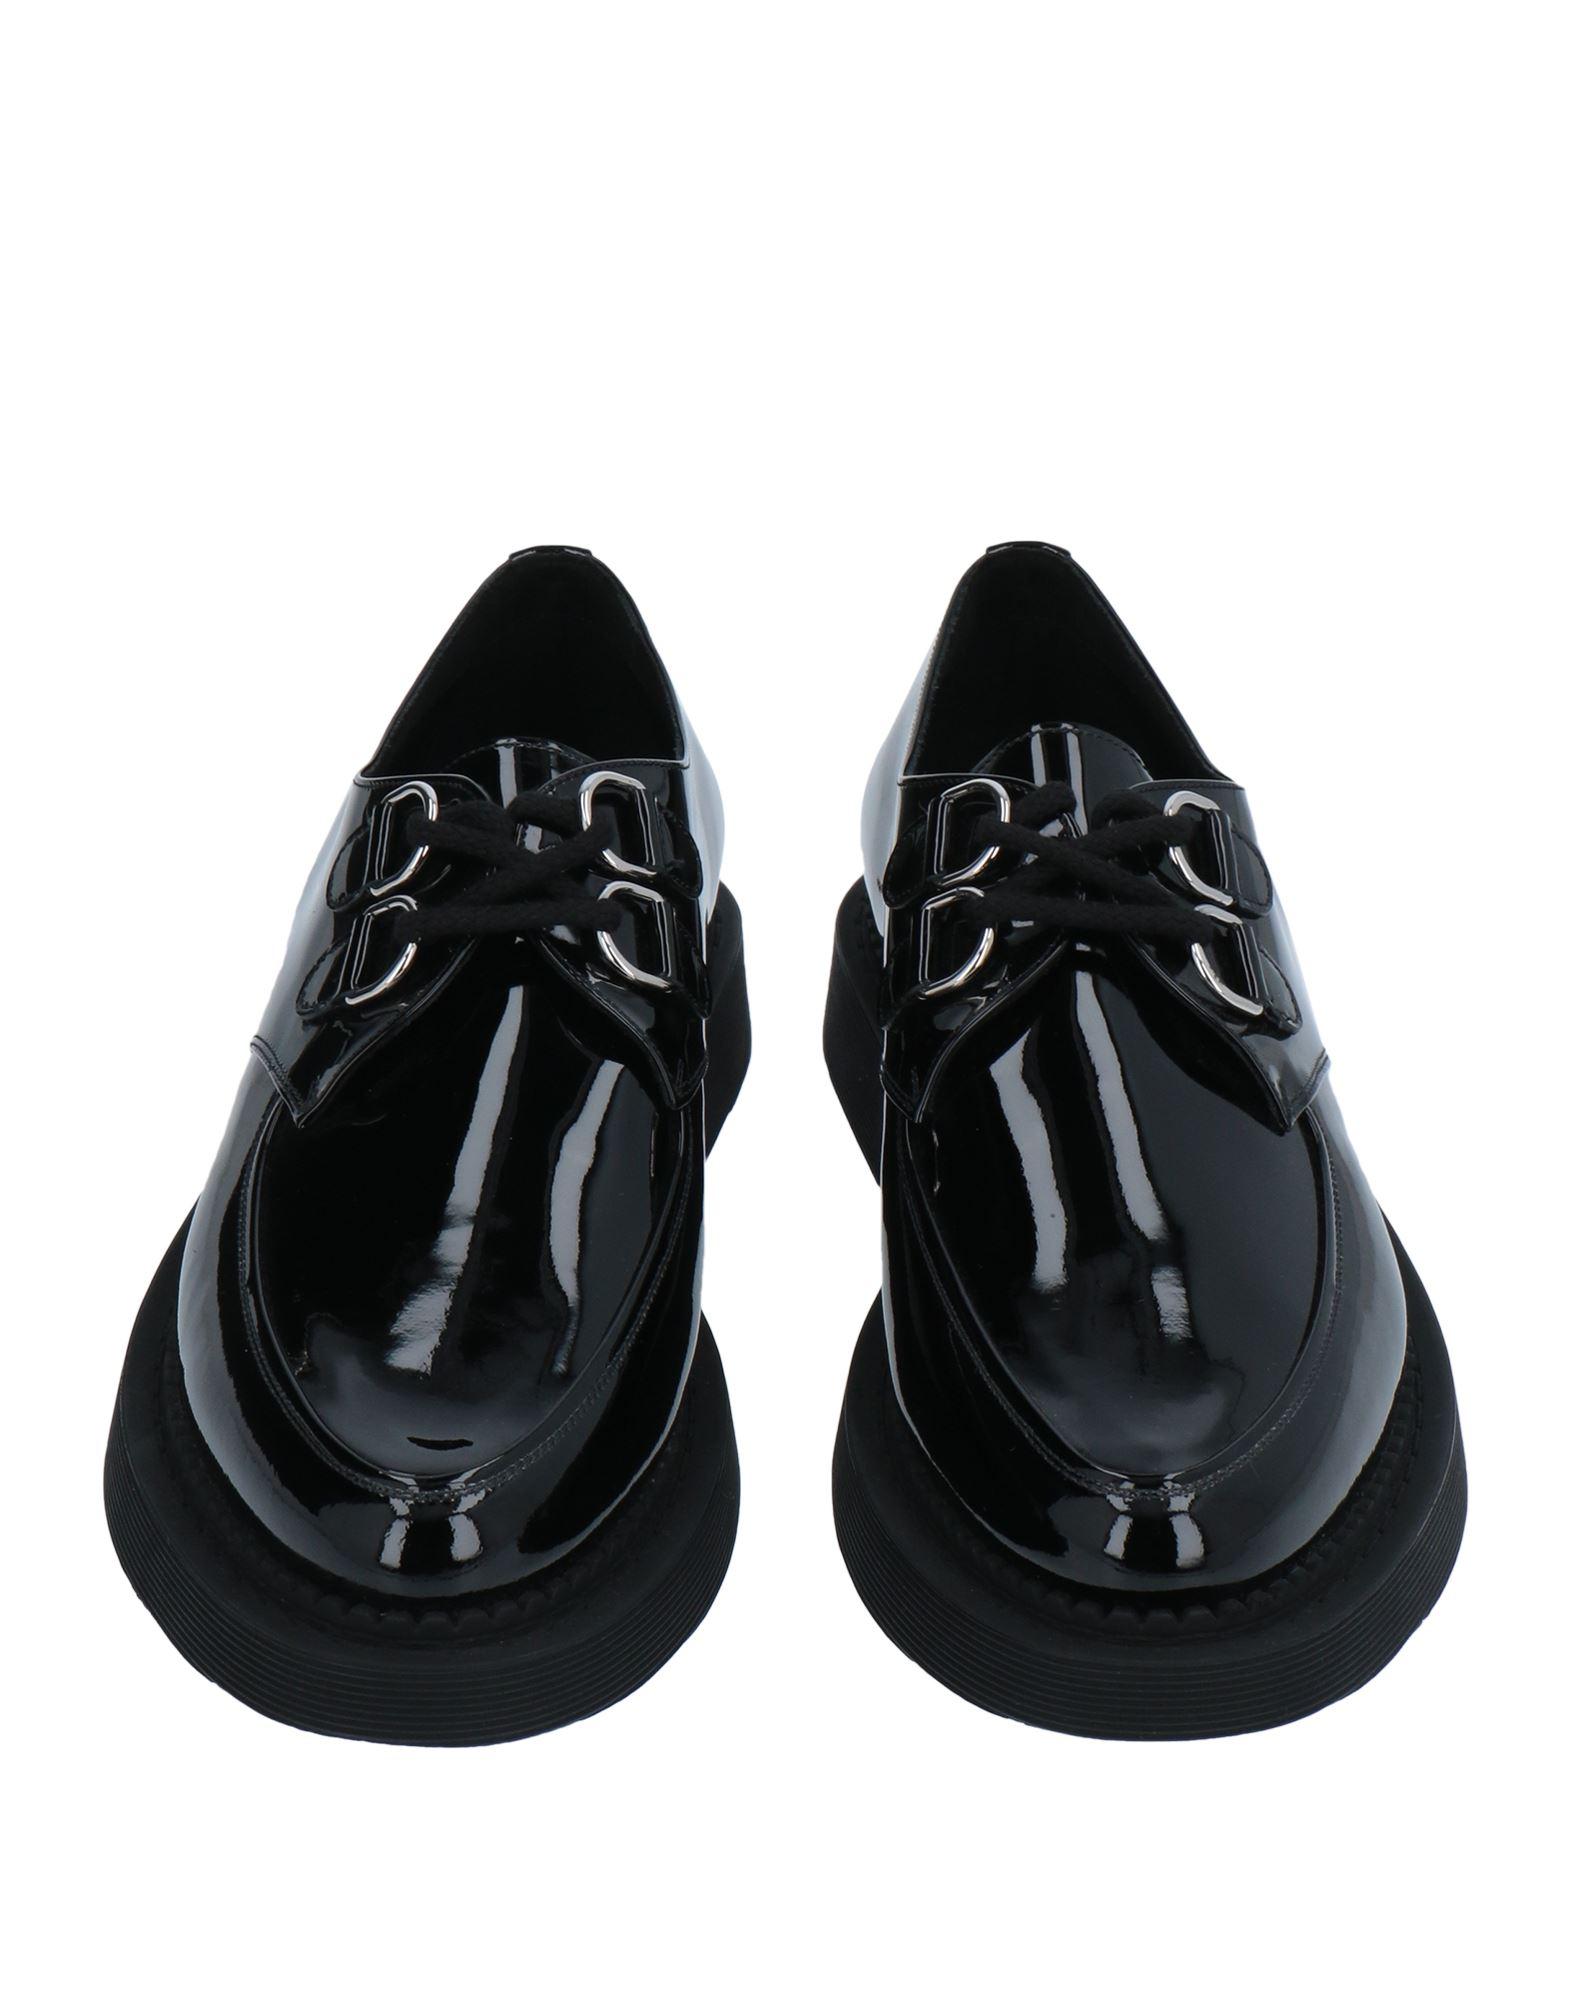 Saint Laurent Lace-up Shoes in Bronze Mens Shoes Lace-ups Oxford shoes for Men Black 